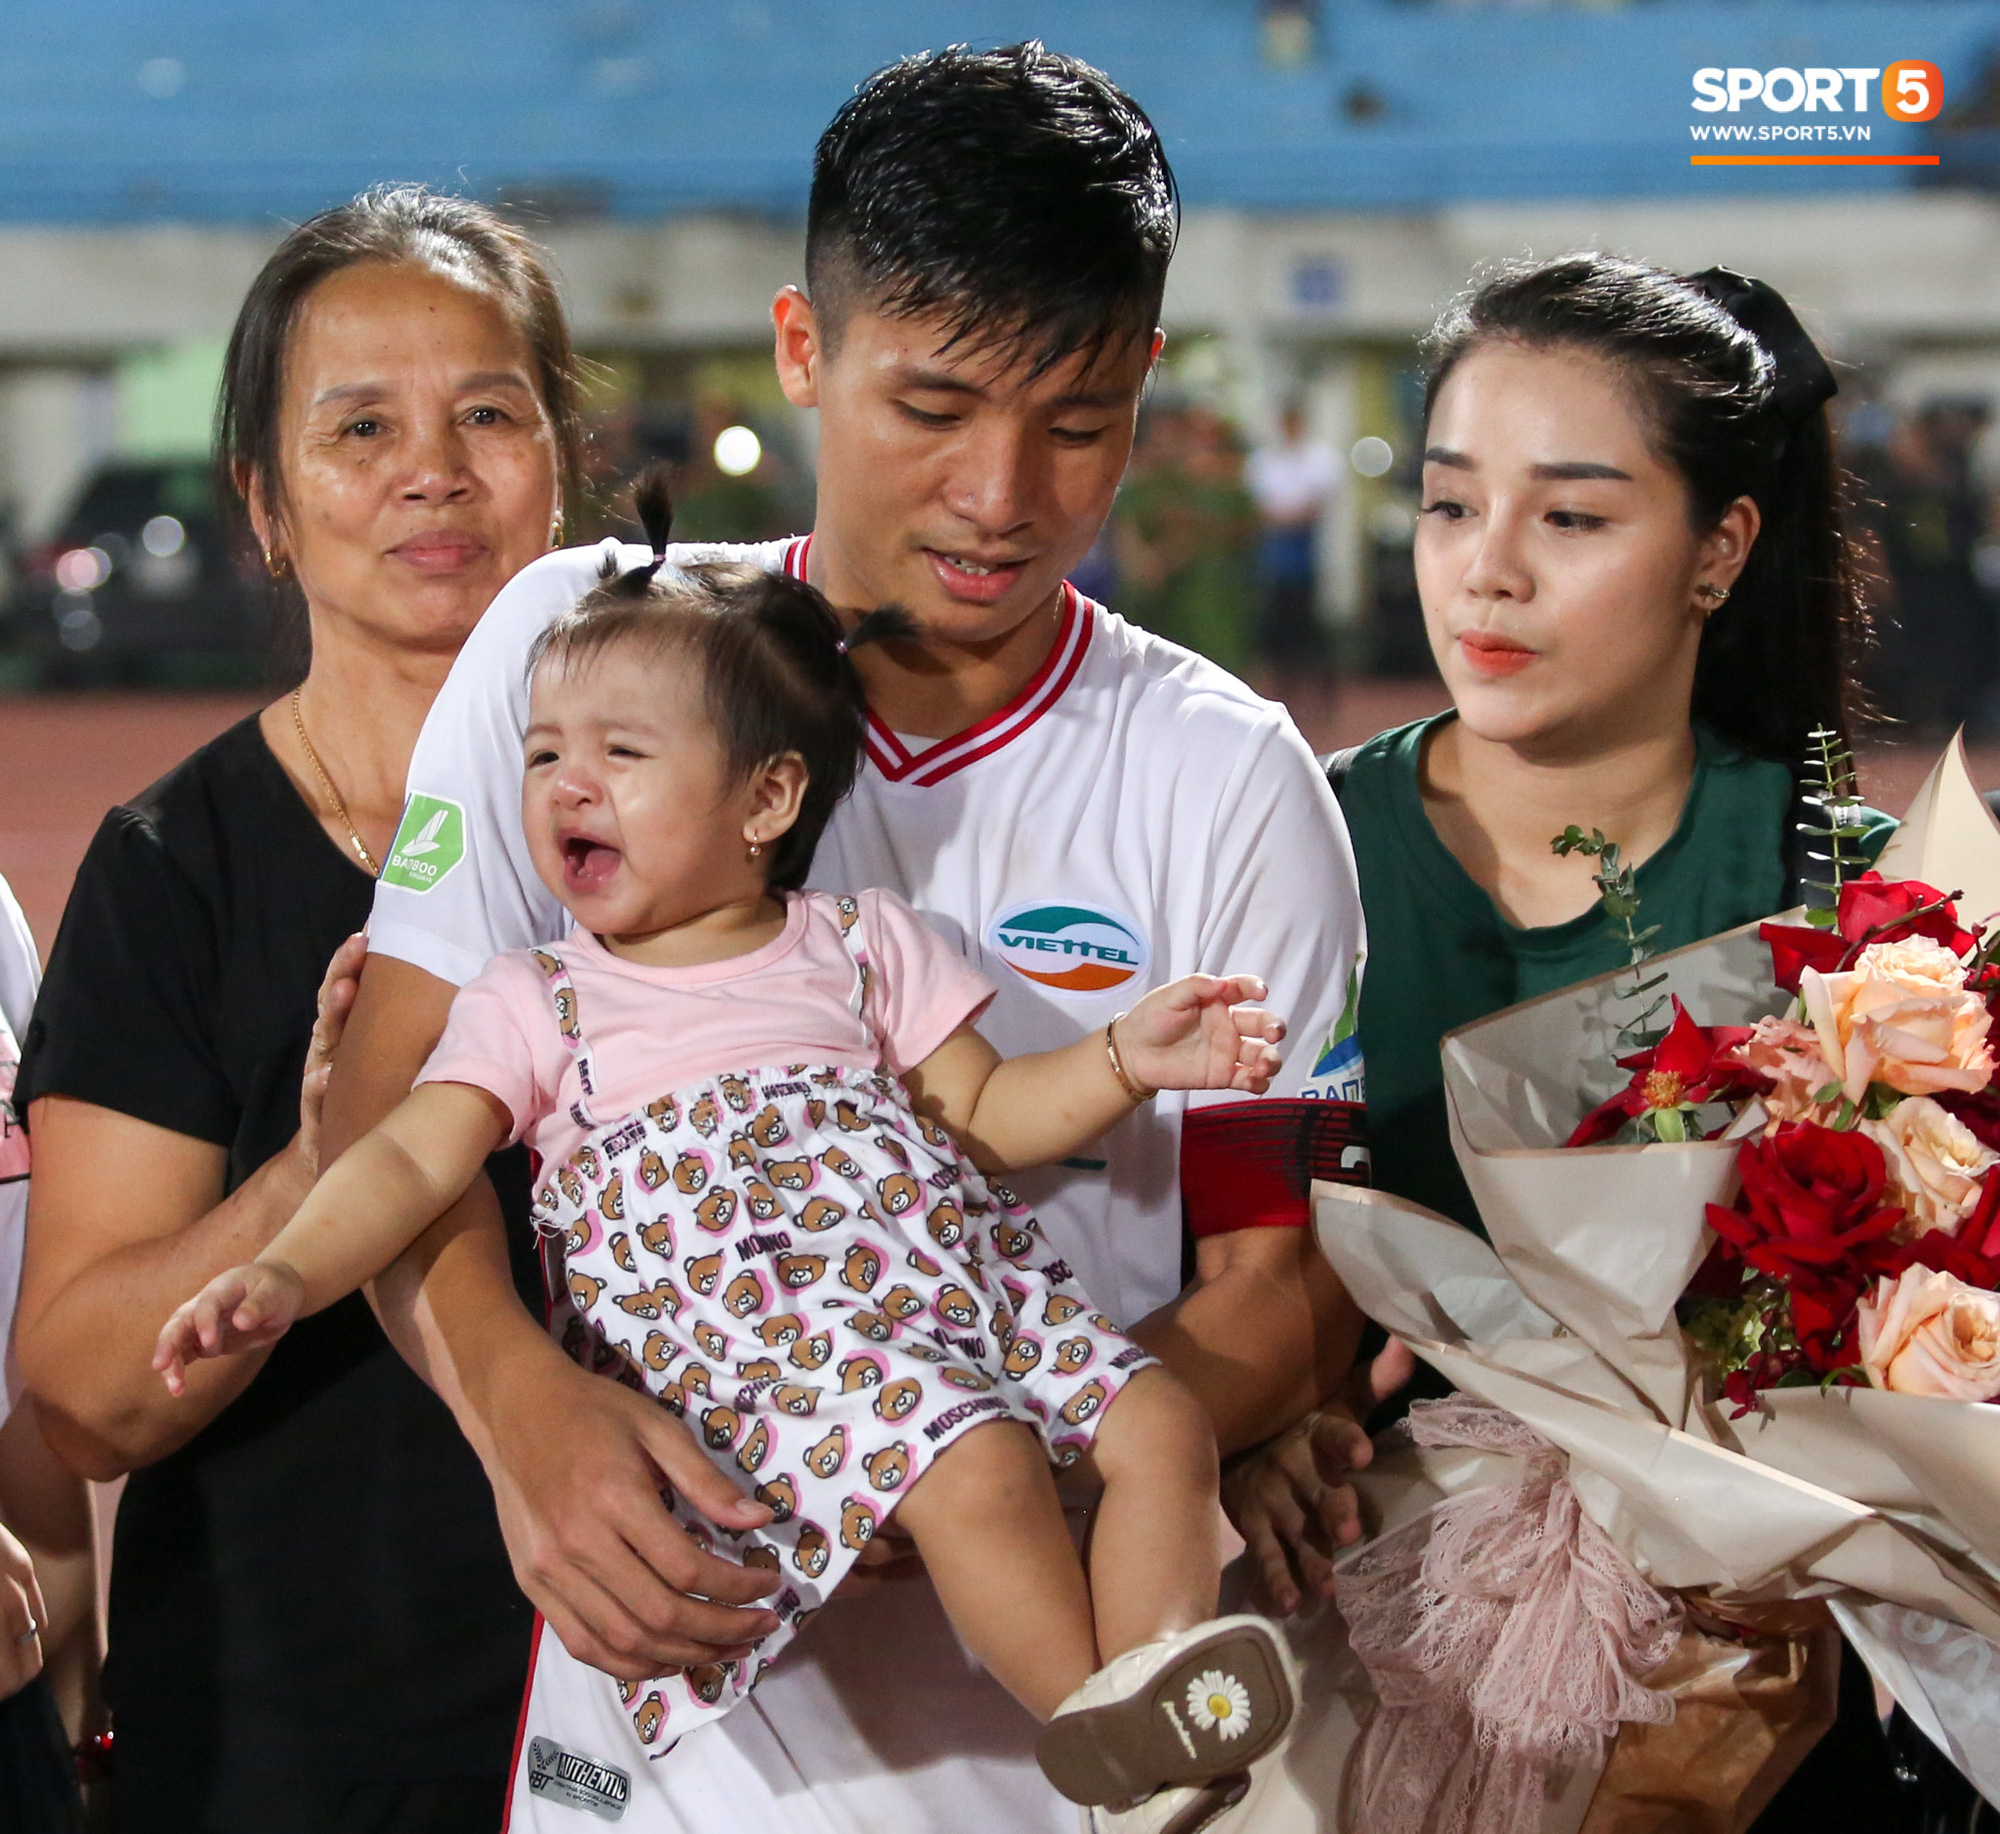 Hình ảnh đàn anh Duy Mạnh cần mẫn đứng quạt cho vợ và con gái, mặc kệ đồng đội ở Hà Nội FC ăn mừng - Ảnh 5.